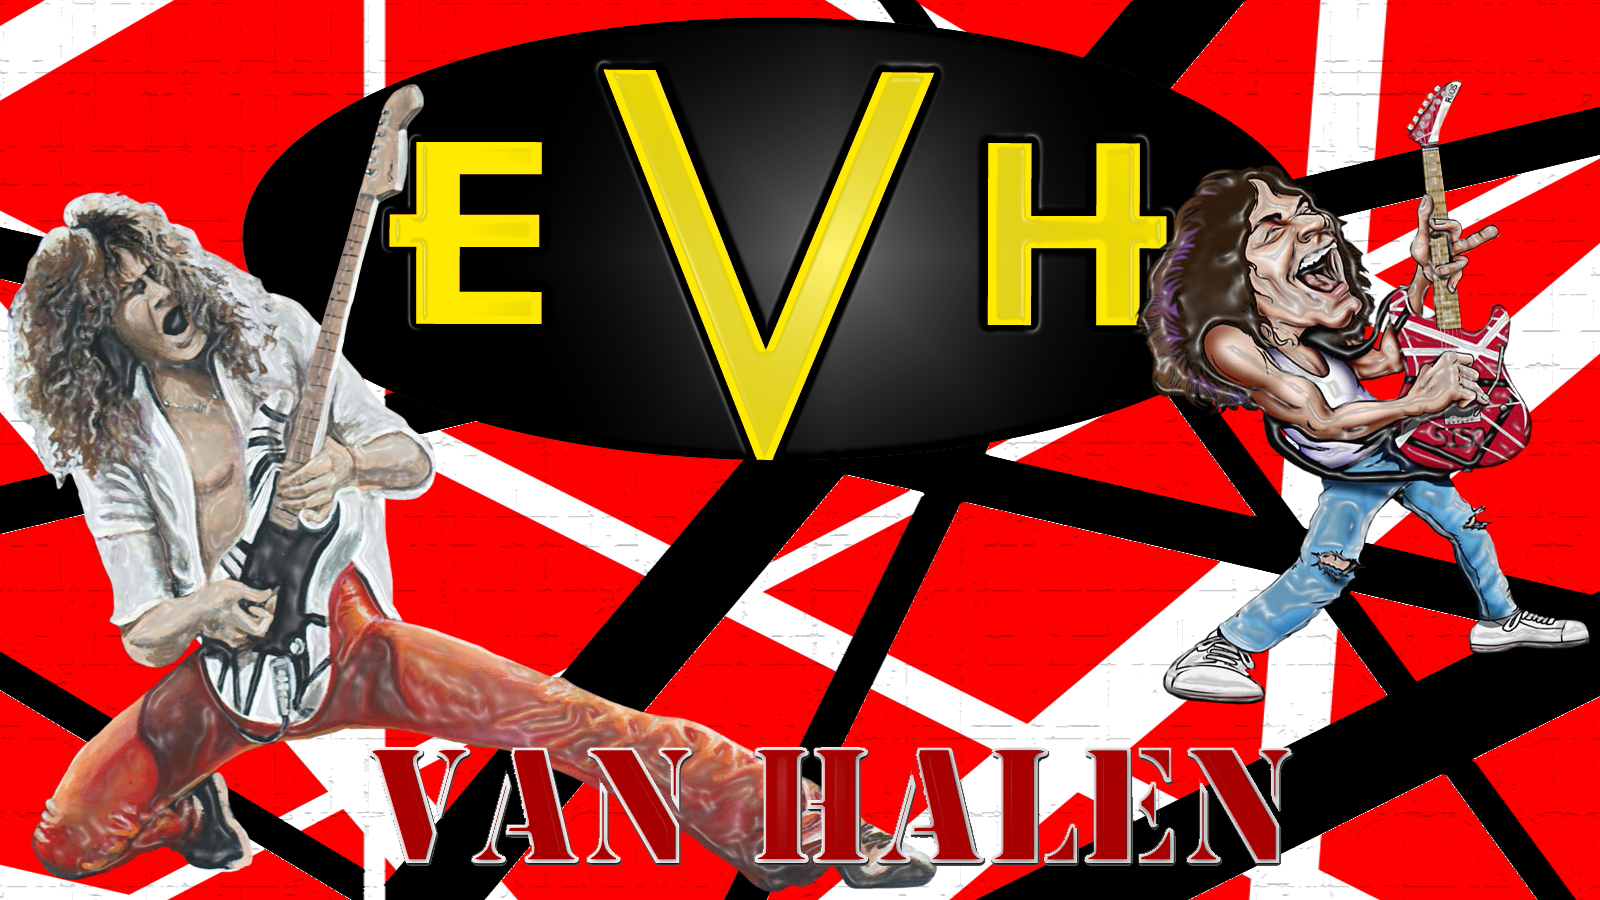 Eddie Van Halen - 1600x900 Wallpaper 